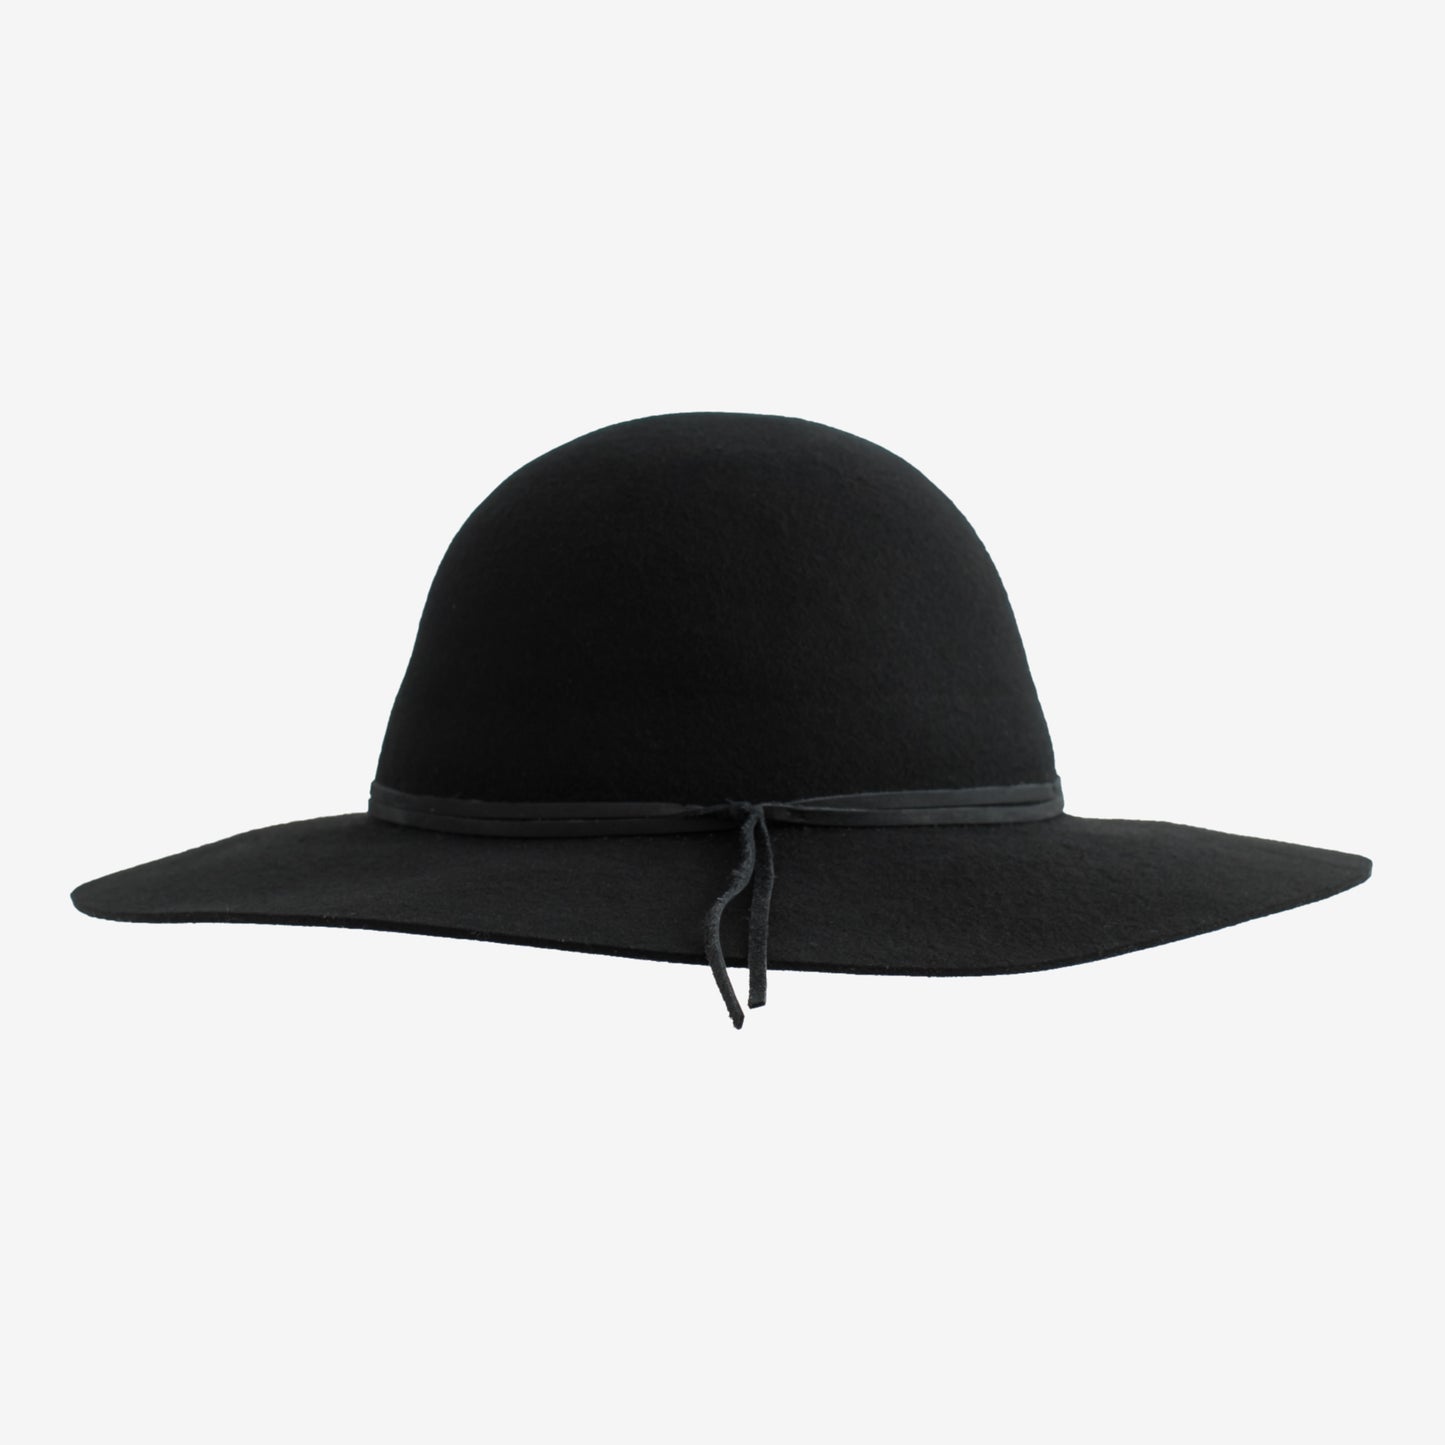 mindo-hats-isabella-round-wool-floppy-hat-black-side